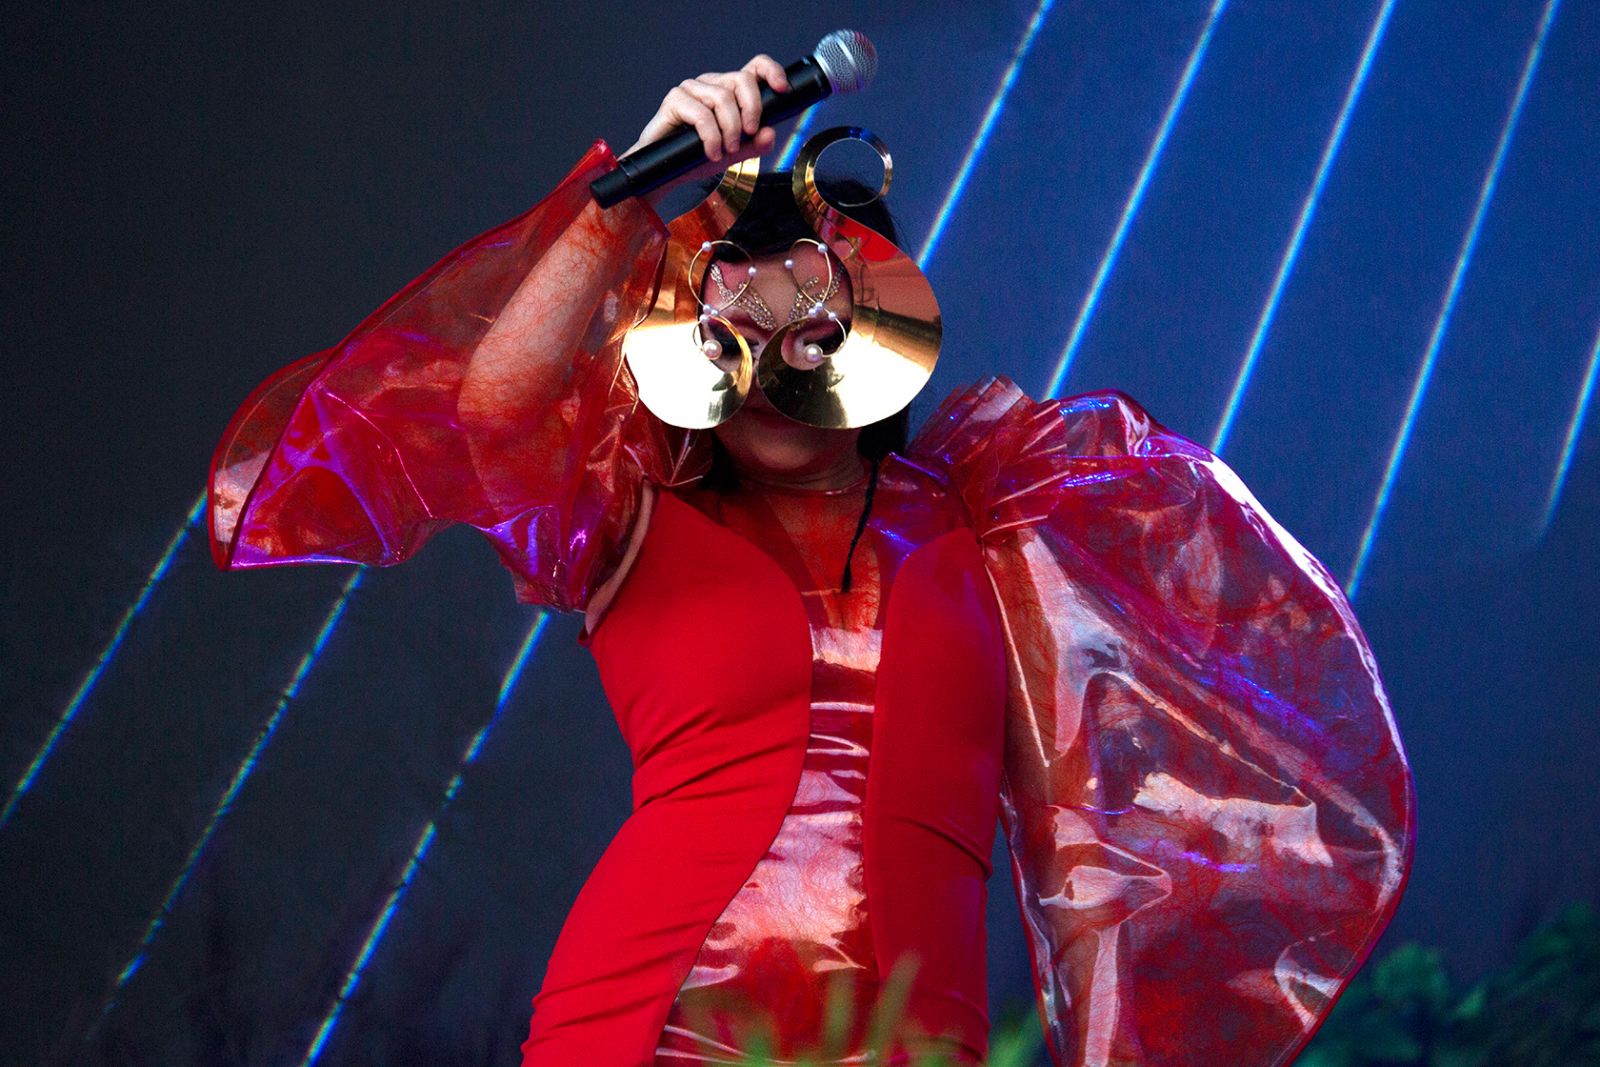 Northside blev en anden verden med Bjørk</br>Under hele koncerten var Bjørk klædt i rød lak, plateausko og en guldfarvet maske.</br>Foto: PR-foto / Northside - Santiago Felipe